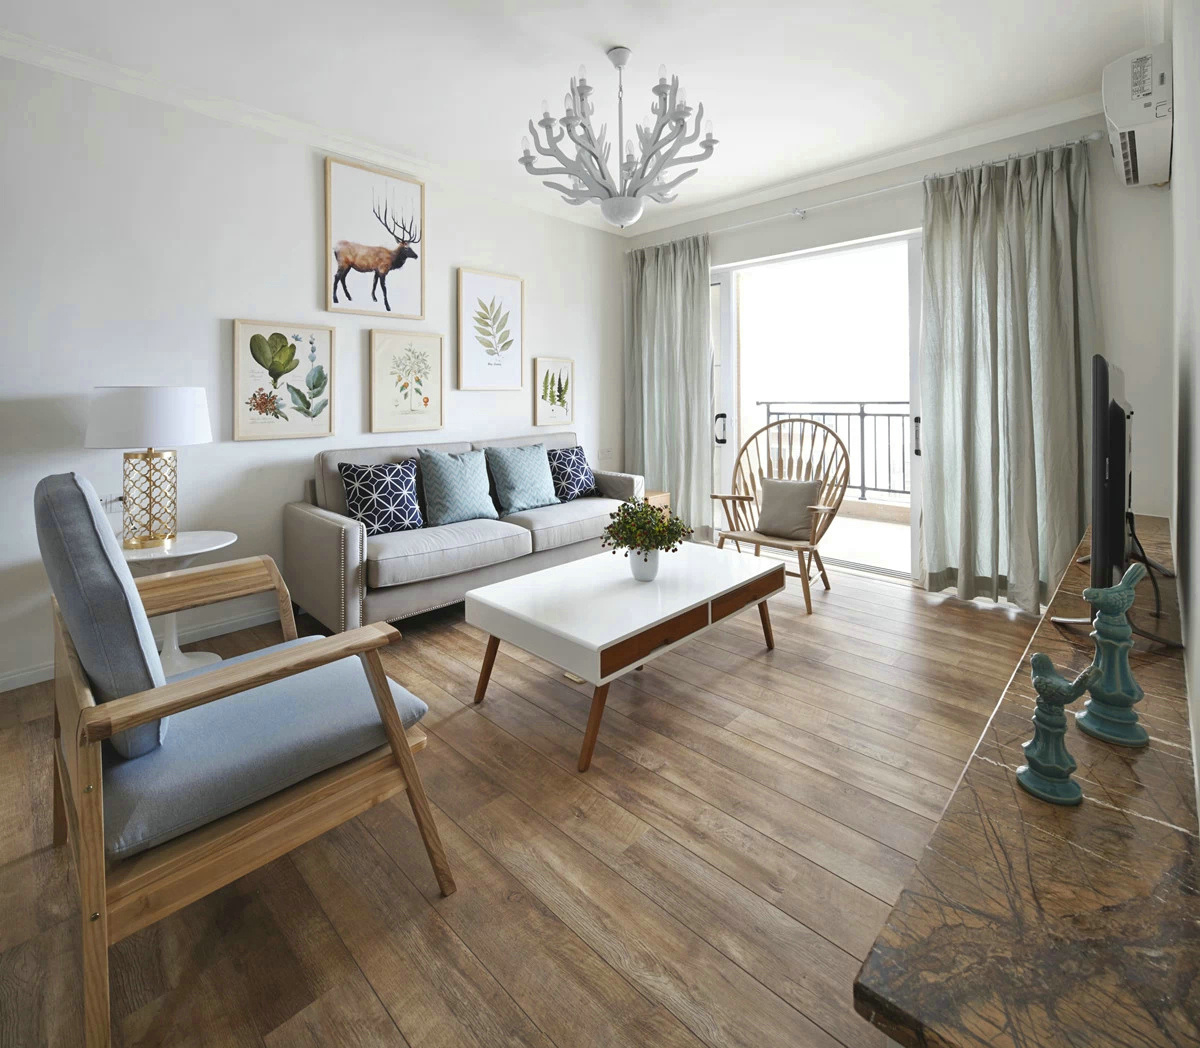 将白色、灰色与木质调元素进行搭配，打造出具有艺术气息的温馨客厅。